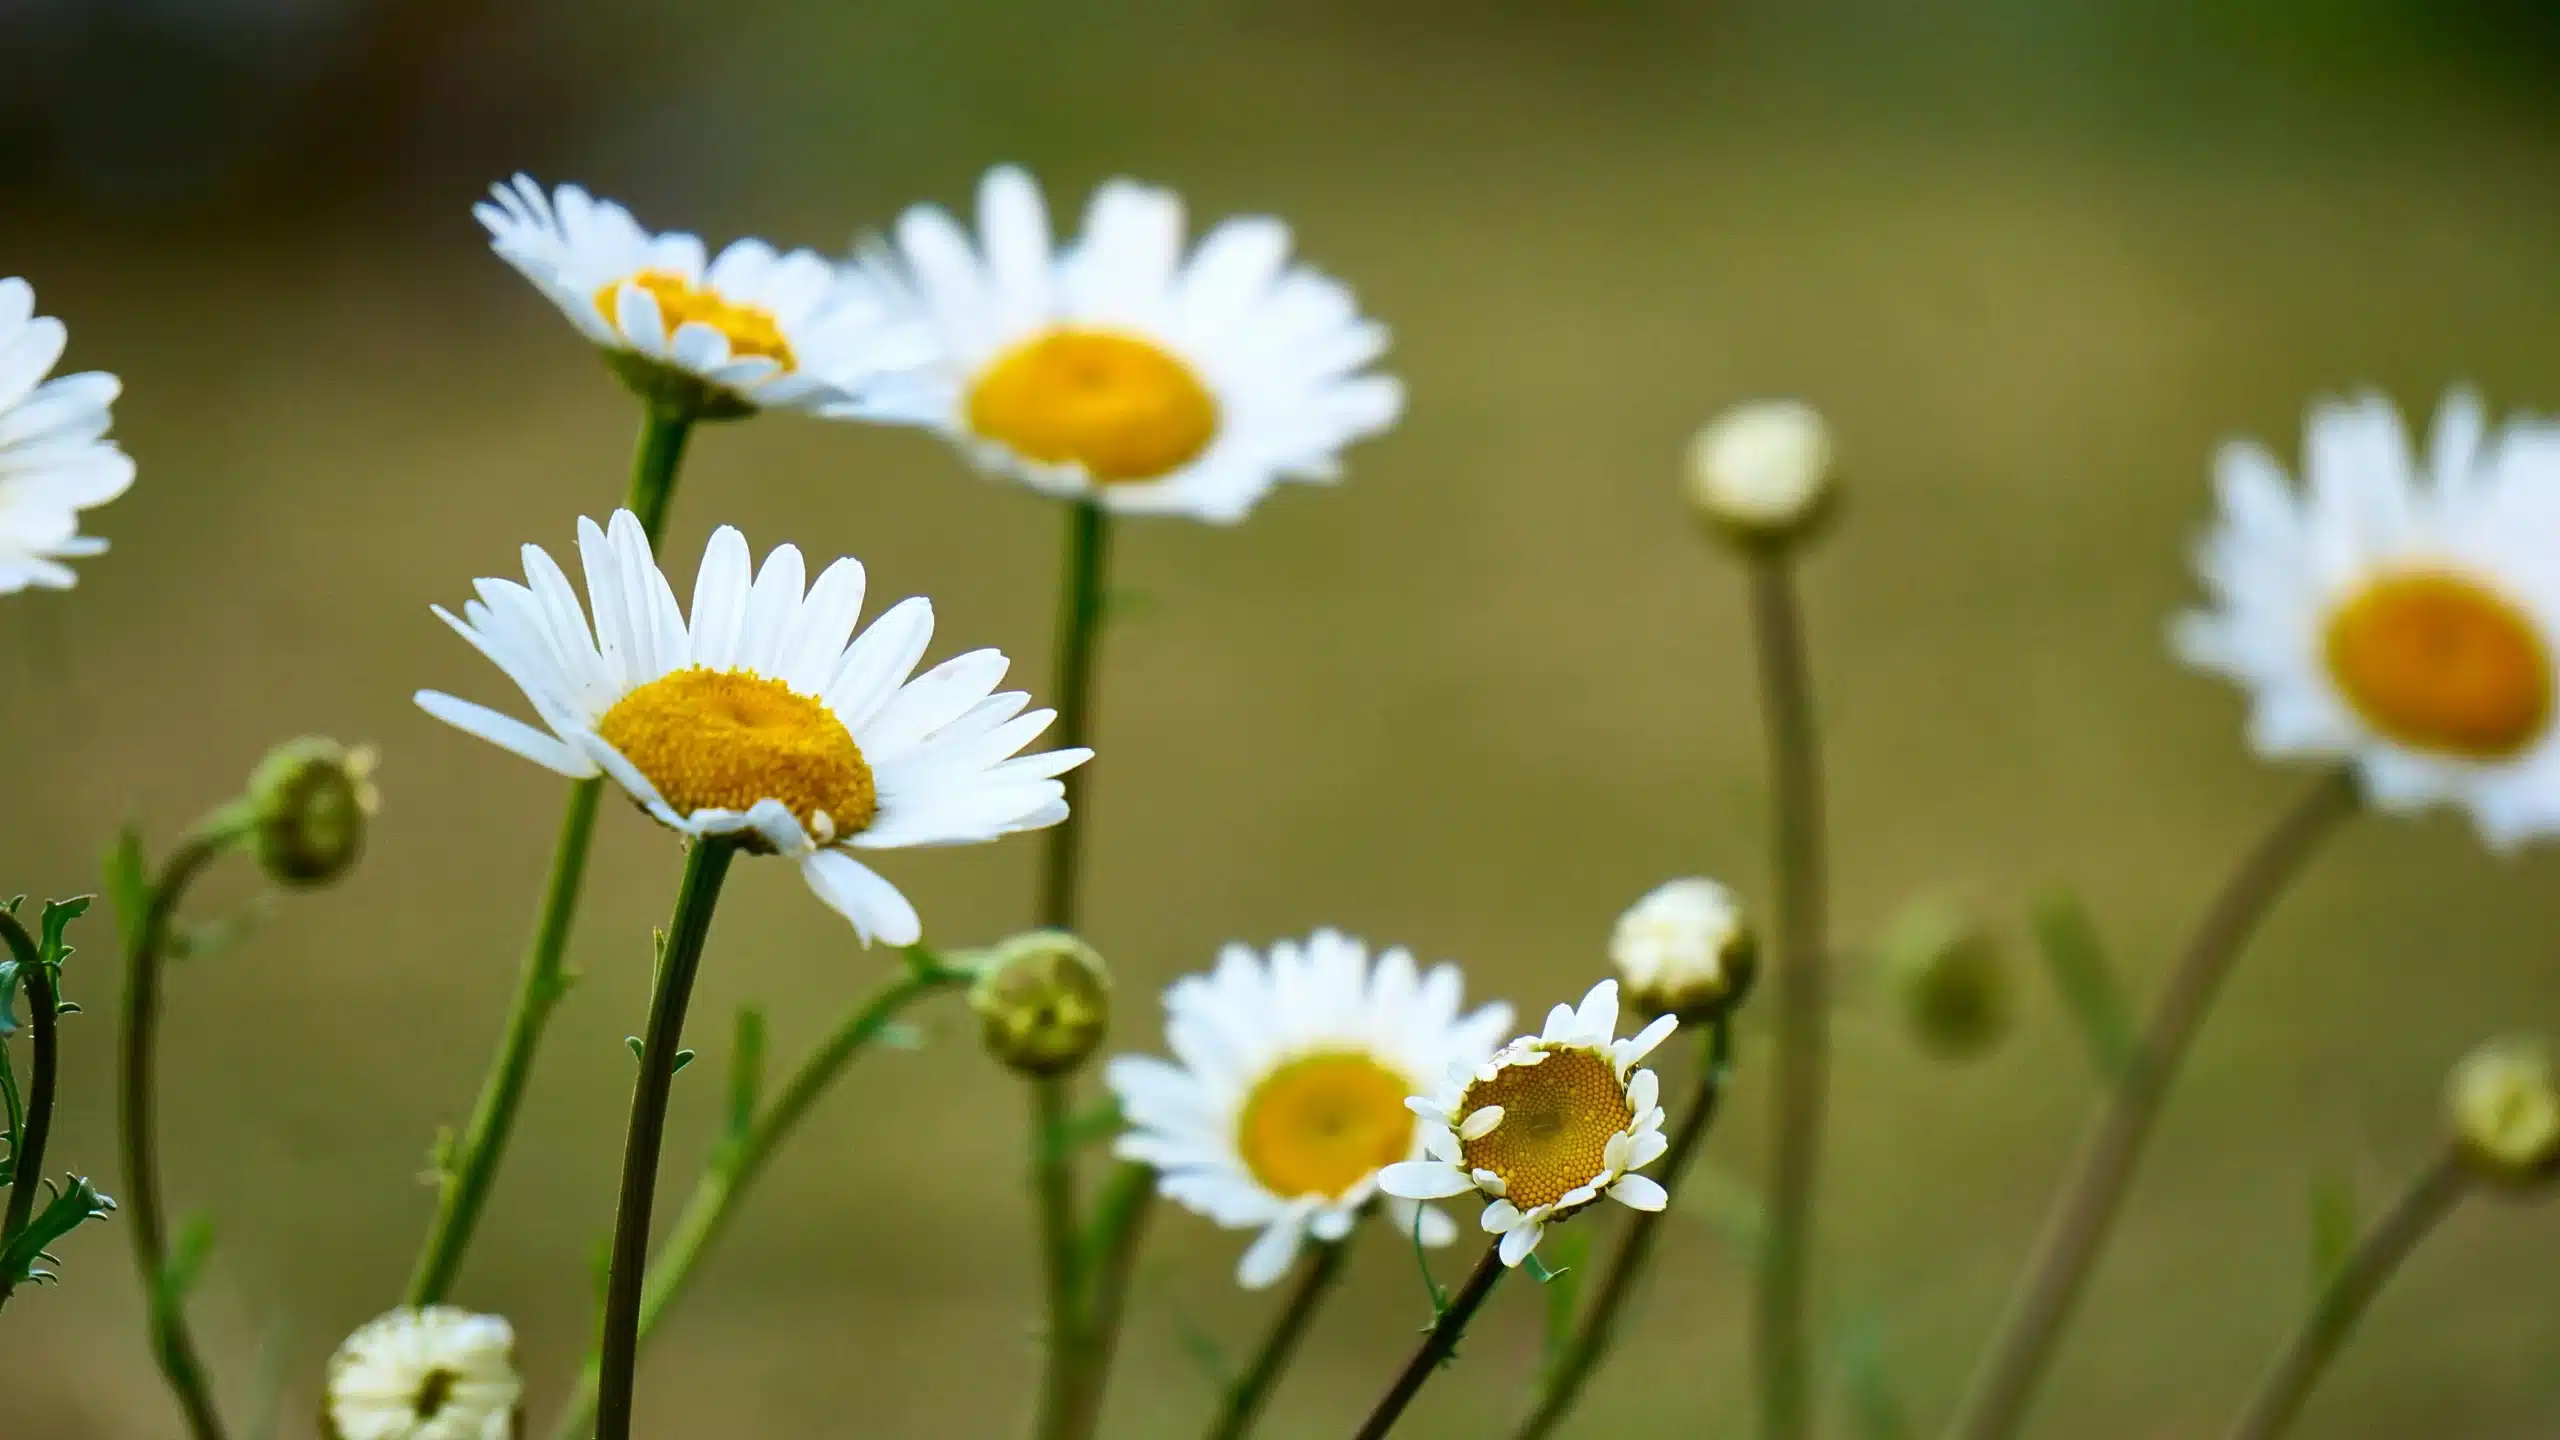 Découvrez les bienfaits de la pâquerette, la petite fleur la plus répandue dans les pelouses des jardins !